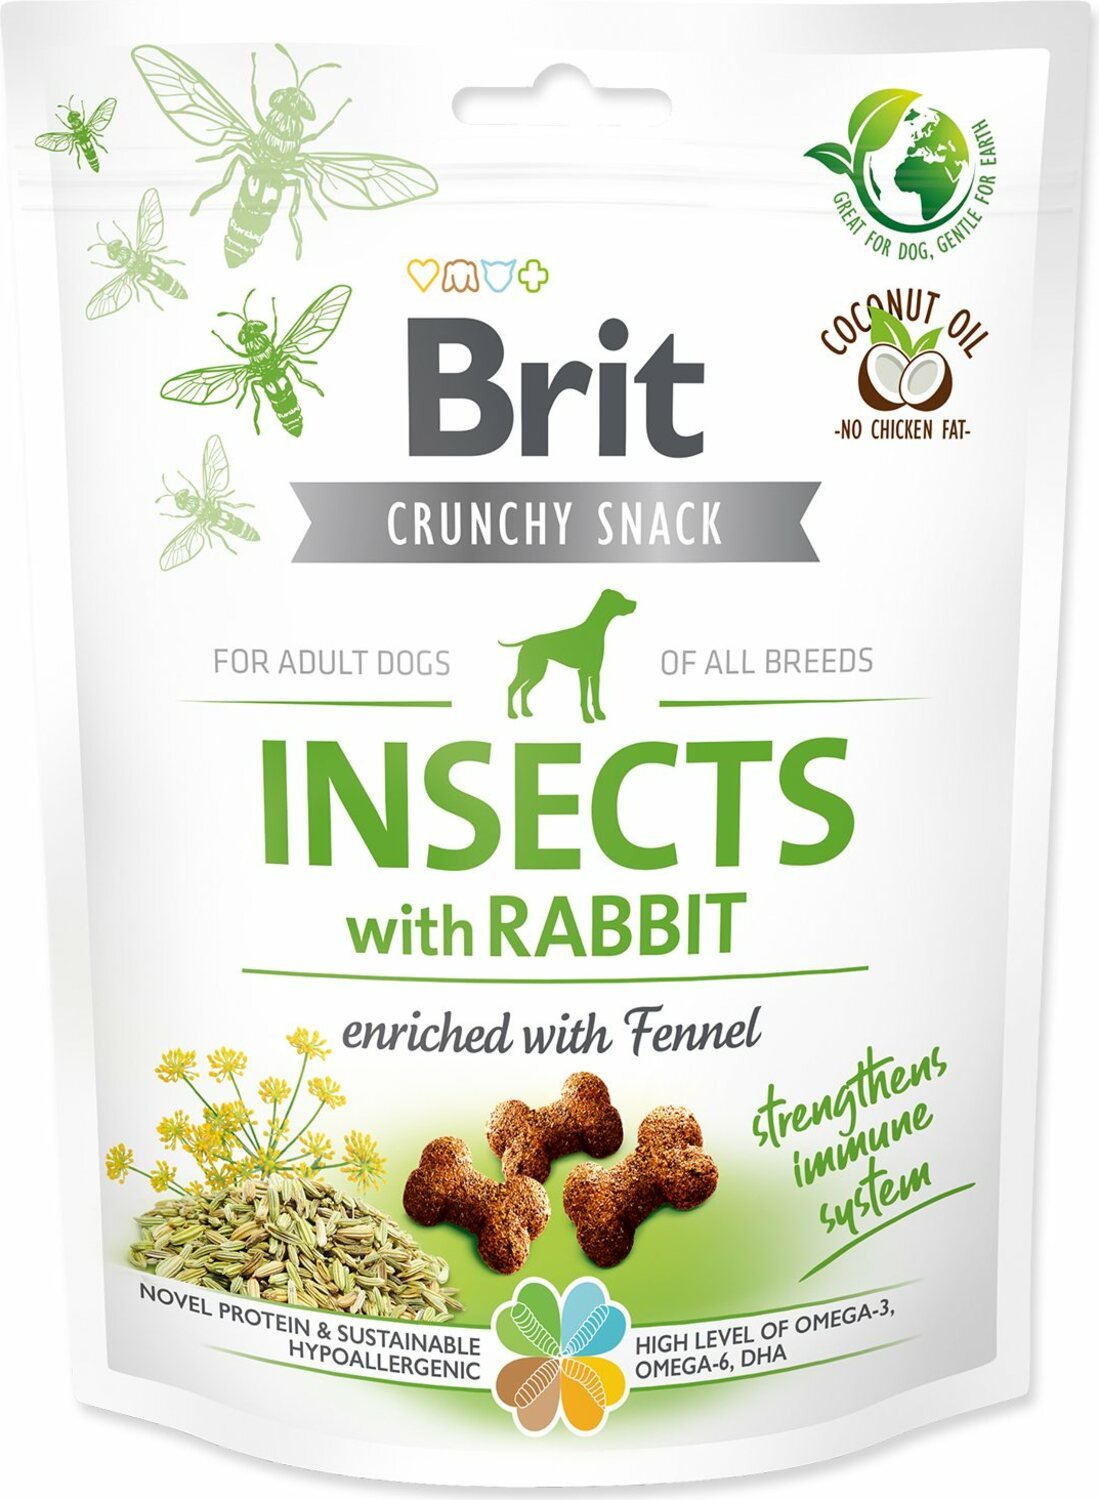 Pochoutka Brit Care Dog Crunchy Cracker Insocts, králík s fenyklem 200g